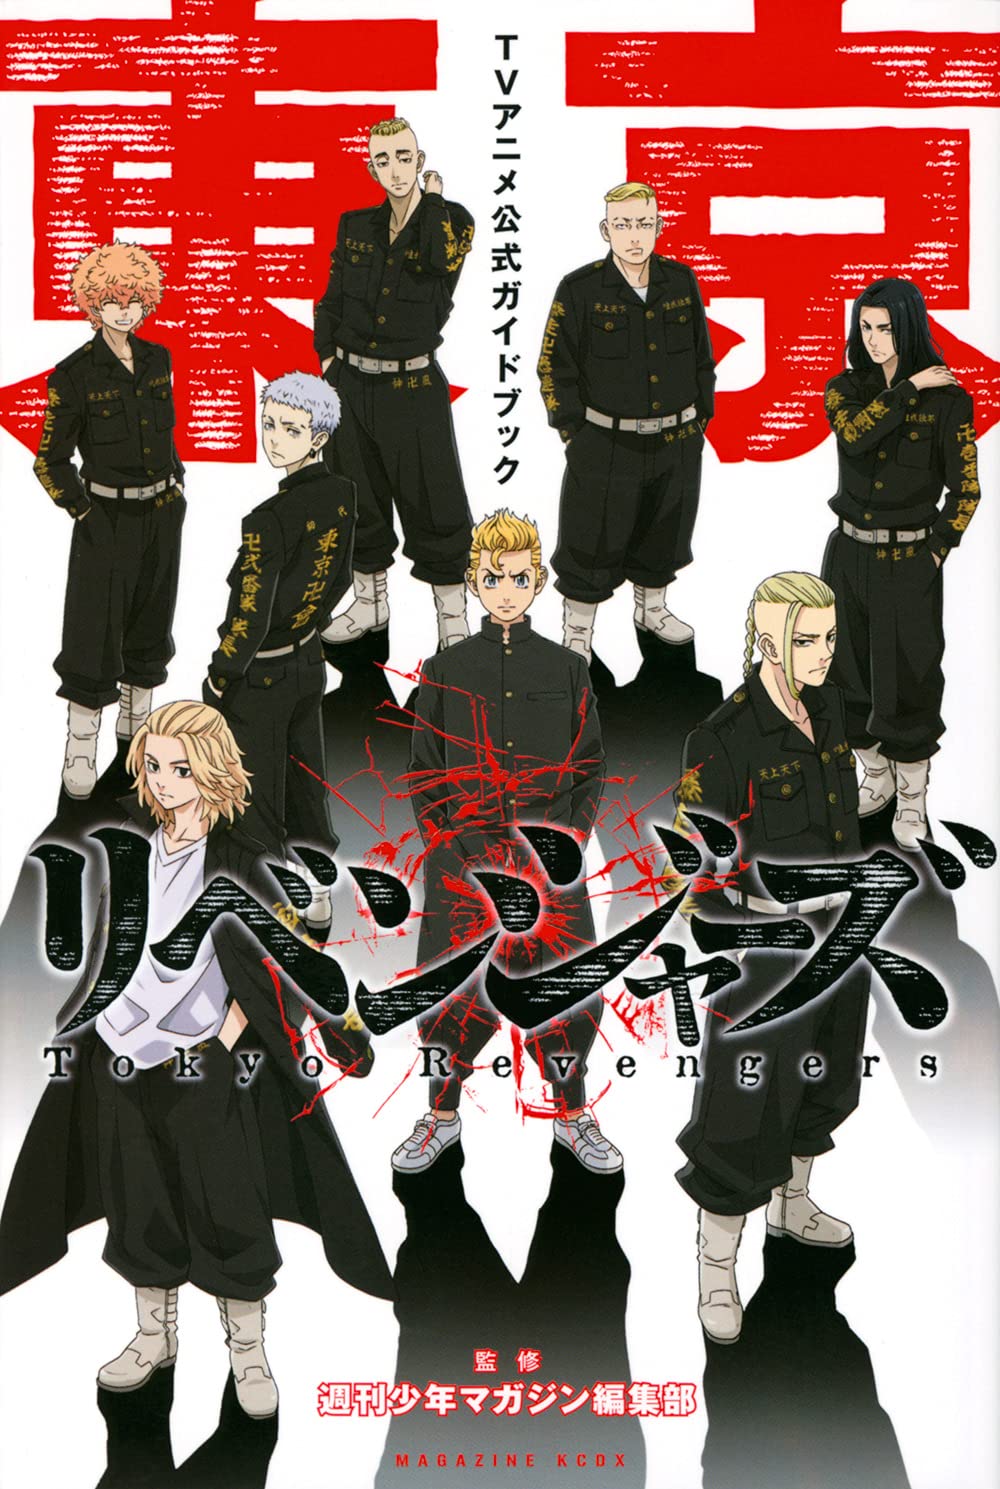 Tokyo Revengers  - Guide Book TV Anime